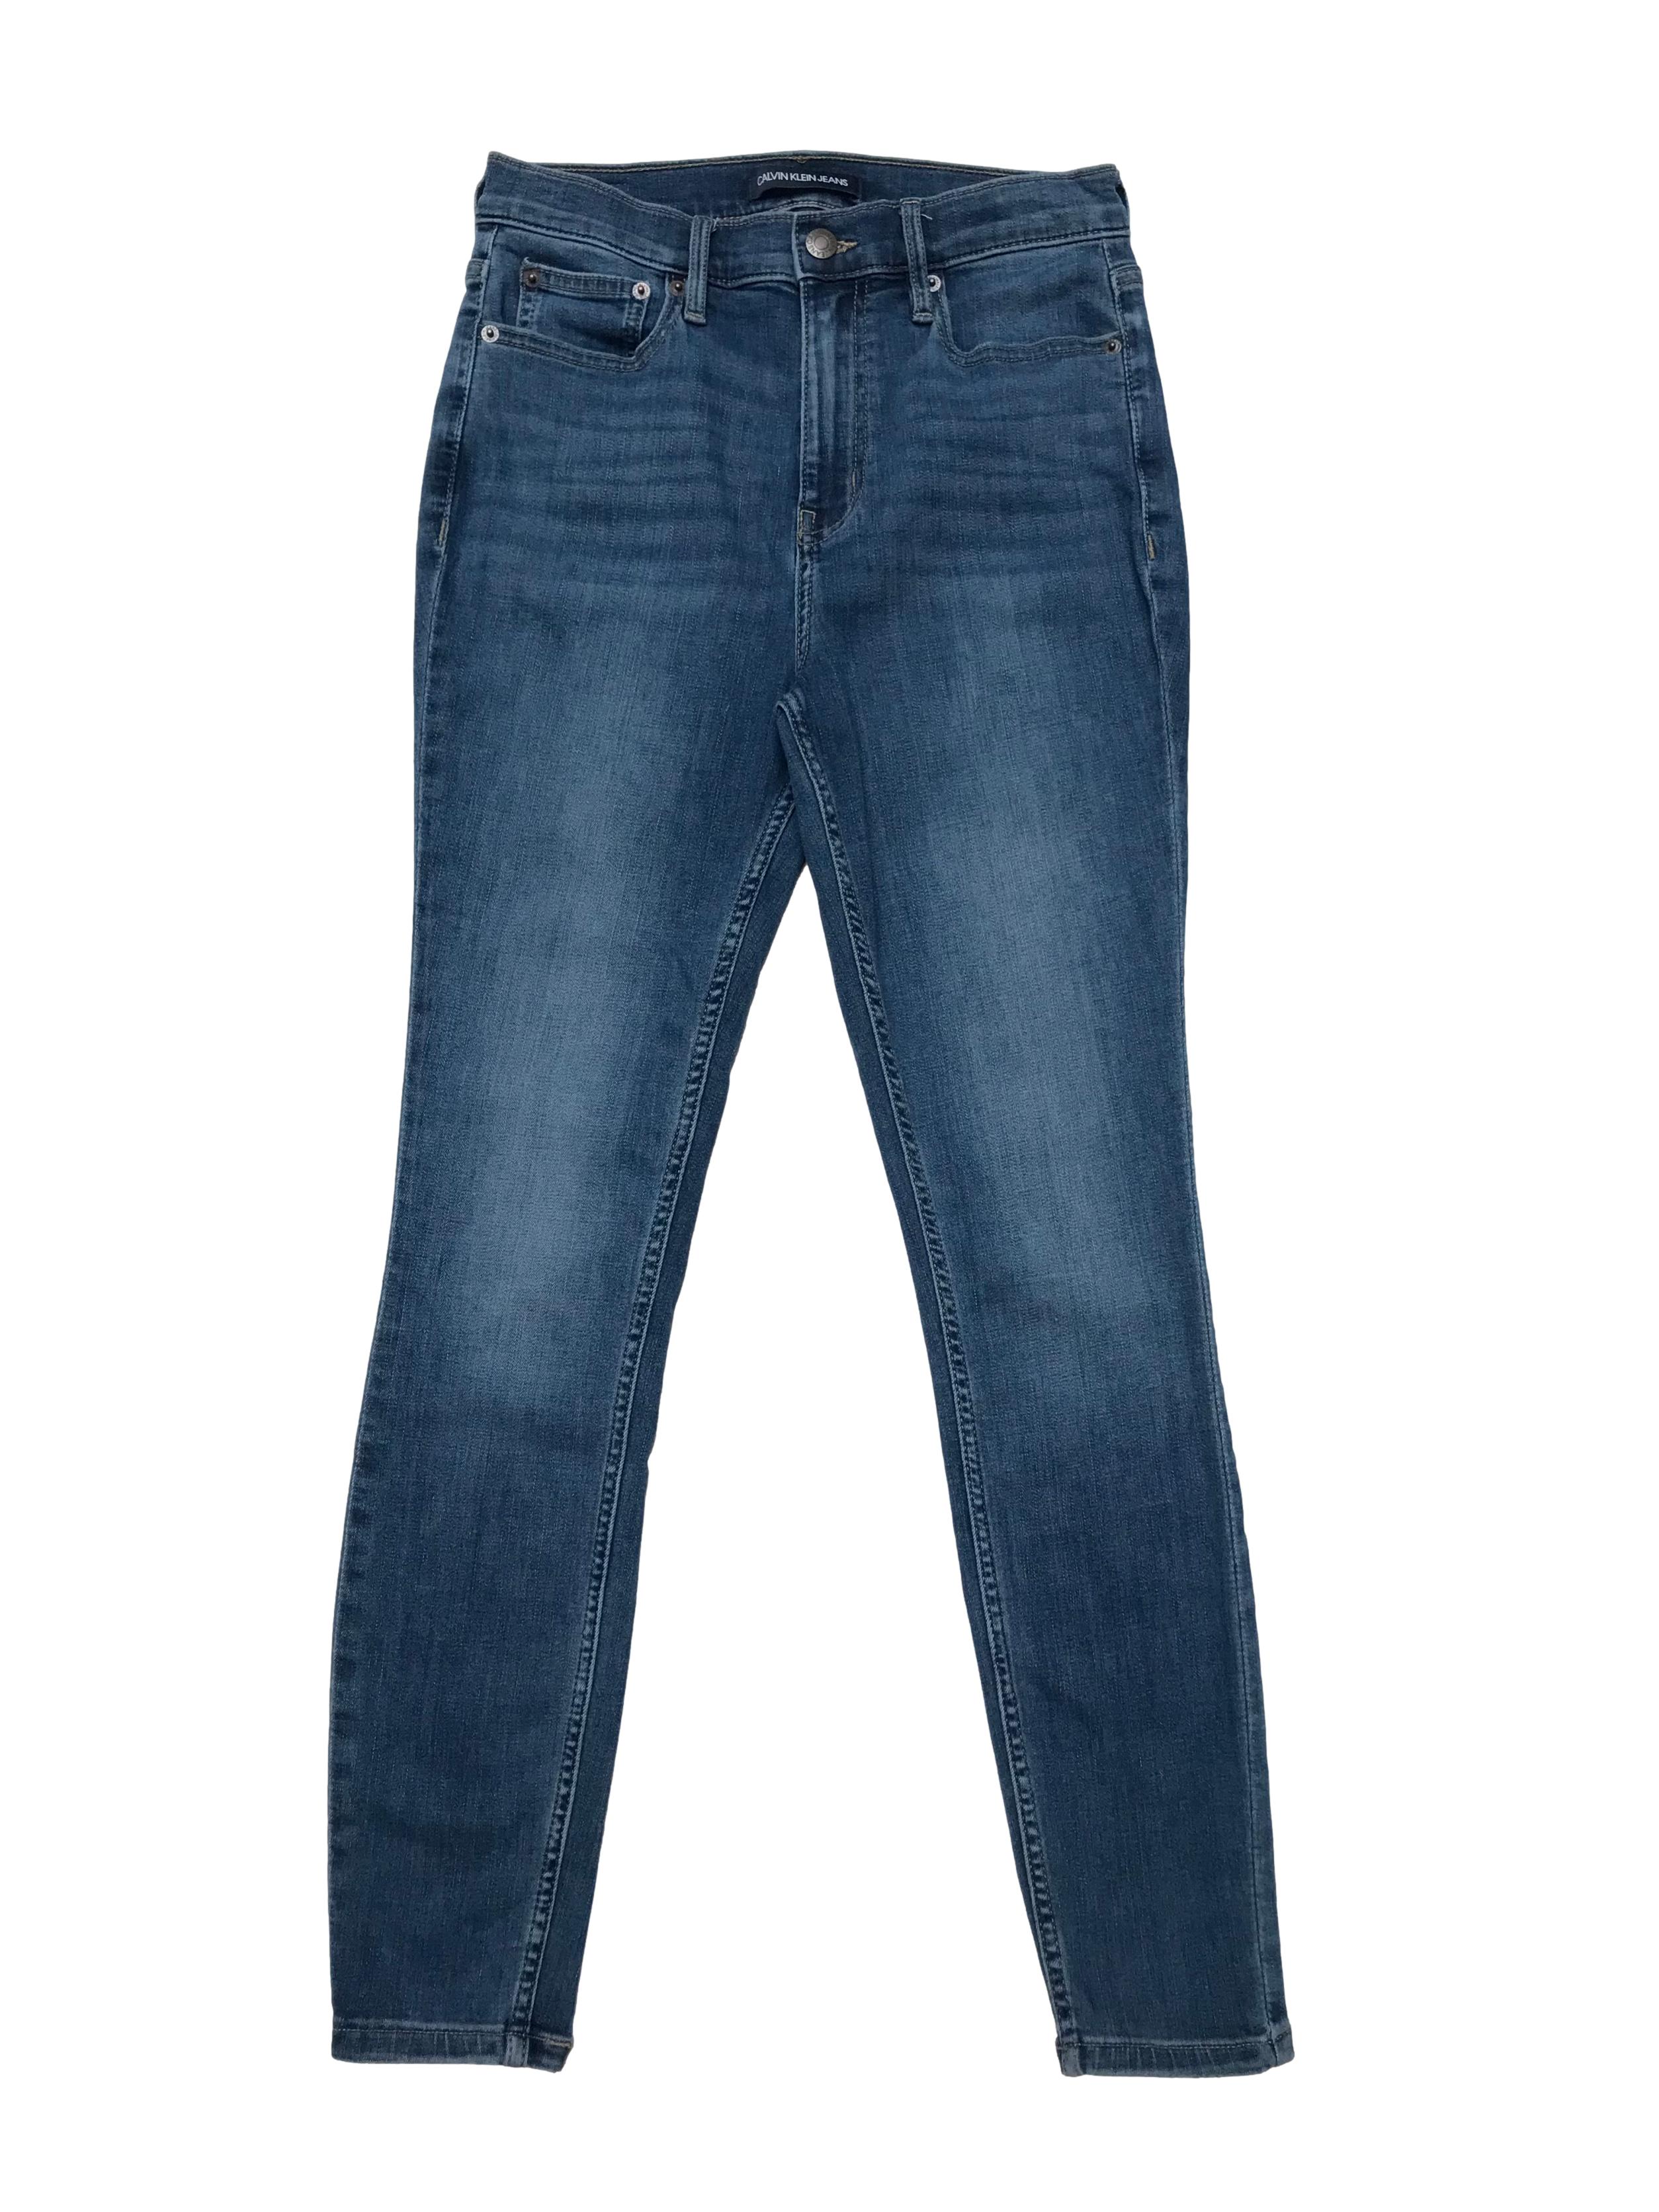 Skinny jean Calvin Klein Jeans a la cintura, stretch. Cintura 70cm Largo 95cm. Precio original S/ 379